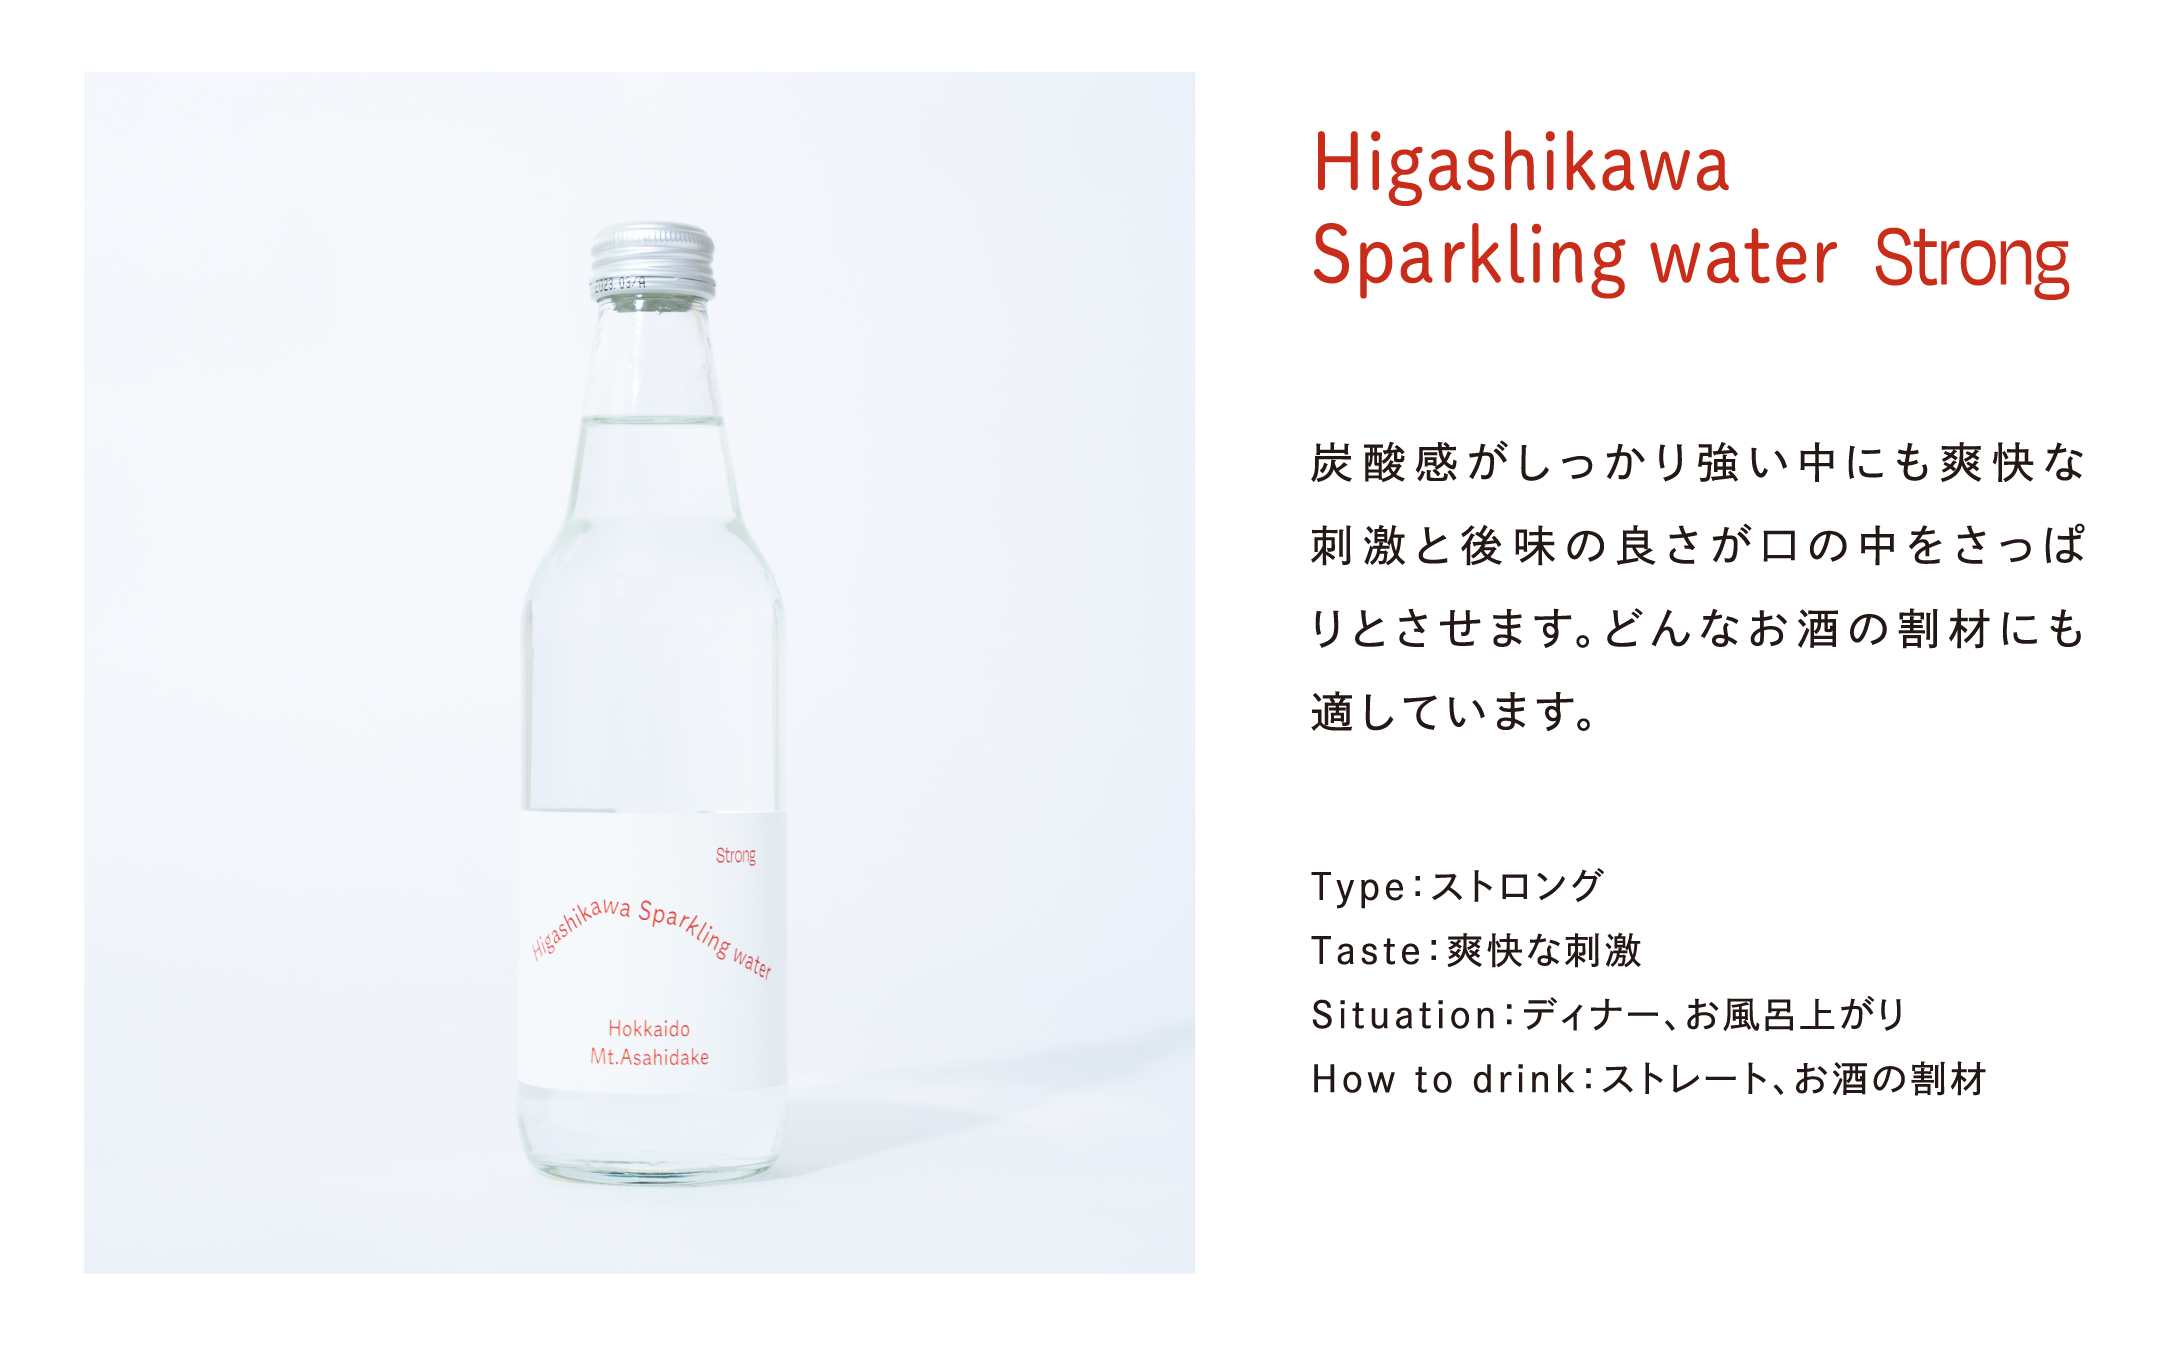 Higashikawa Sparkling water (東川スパークリングウォ―ター）Strong:強発泡タイプ 24本入り